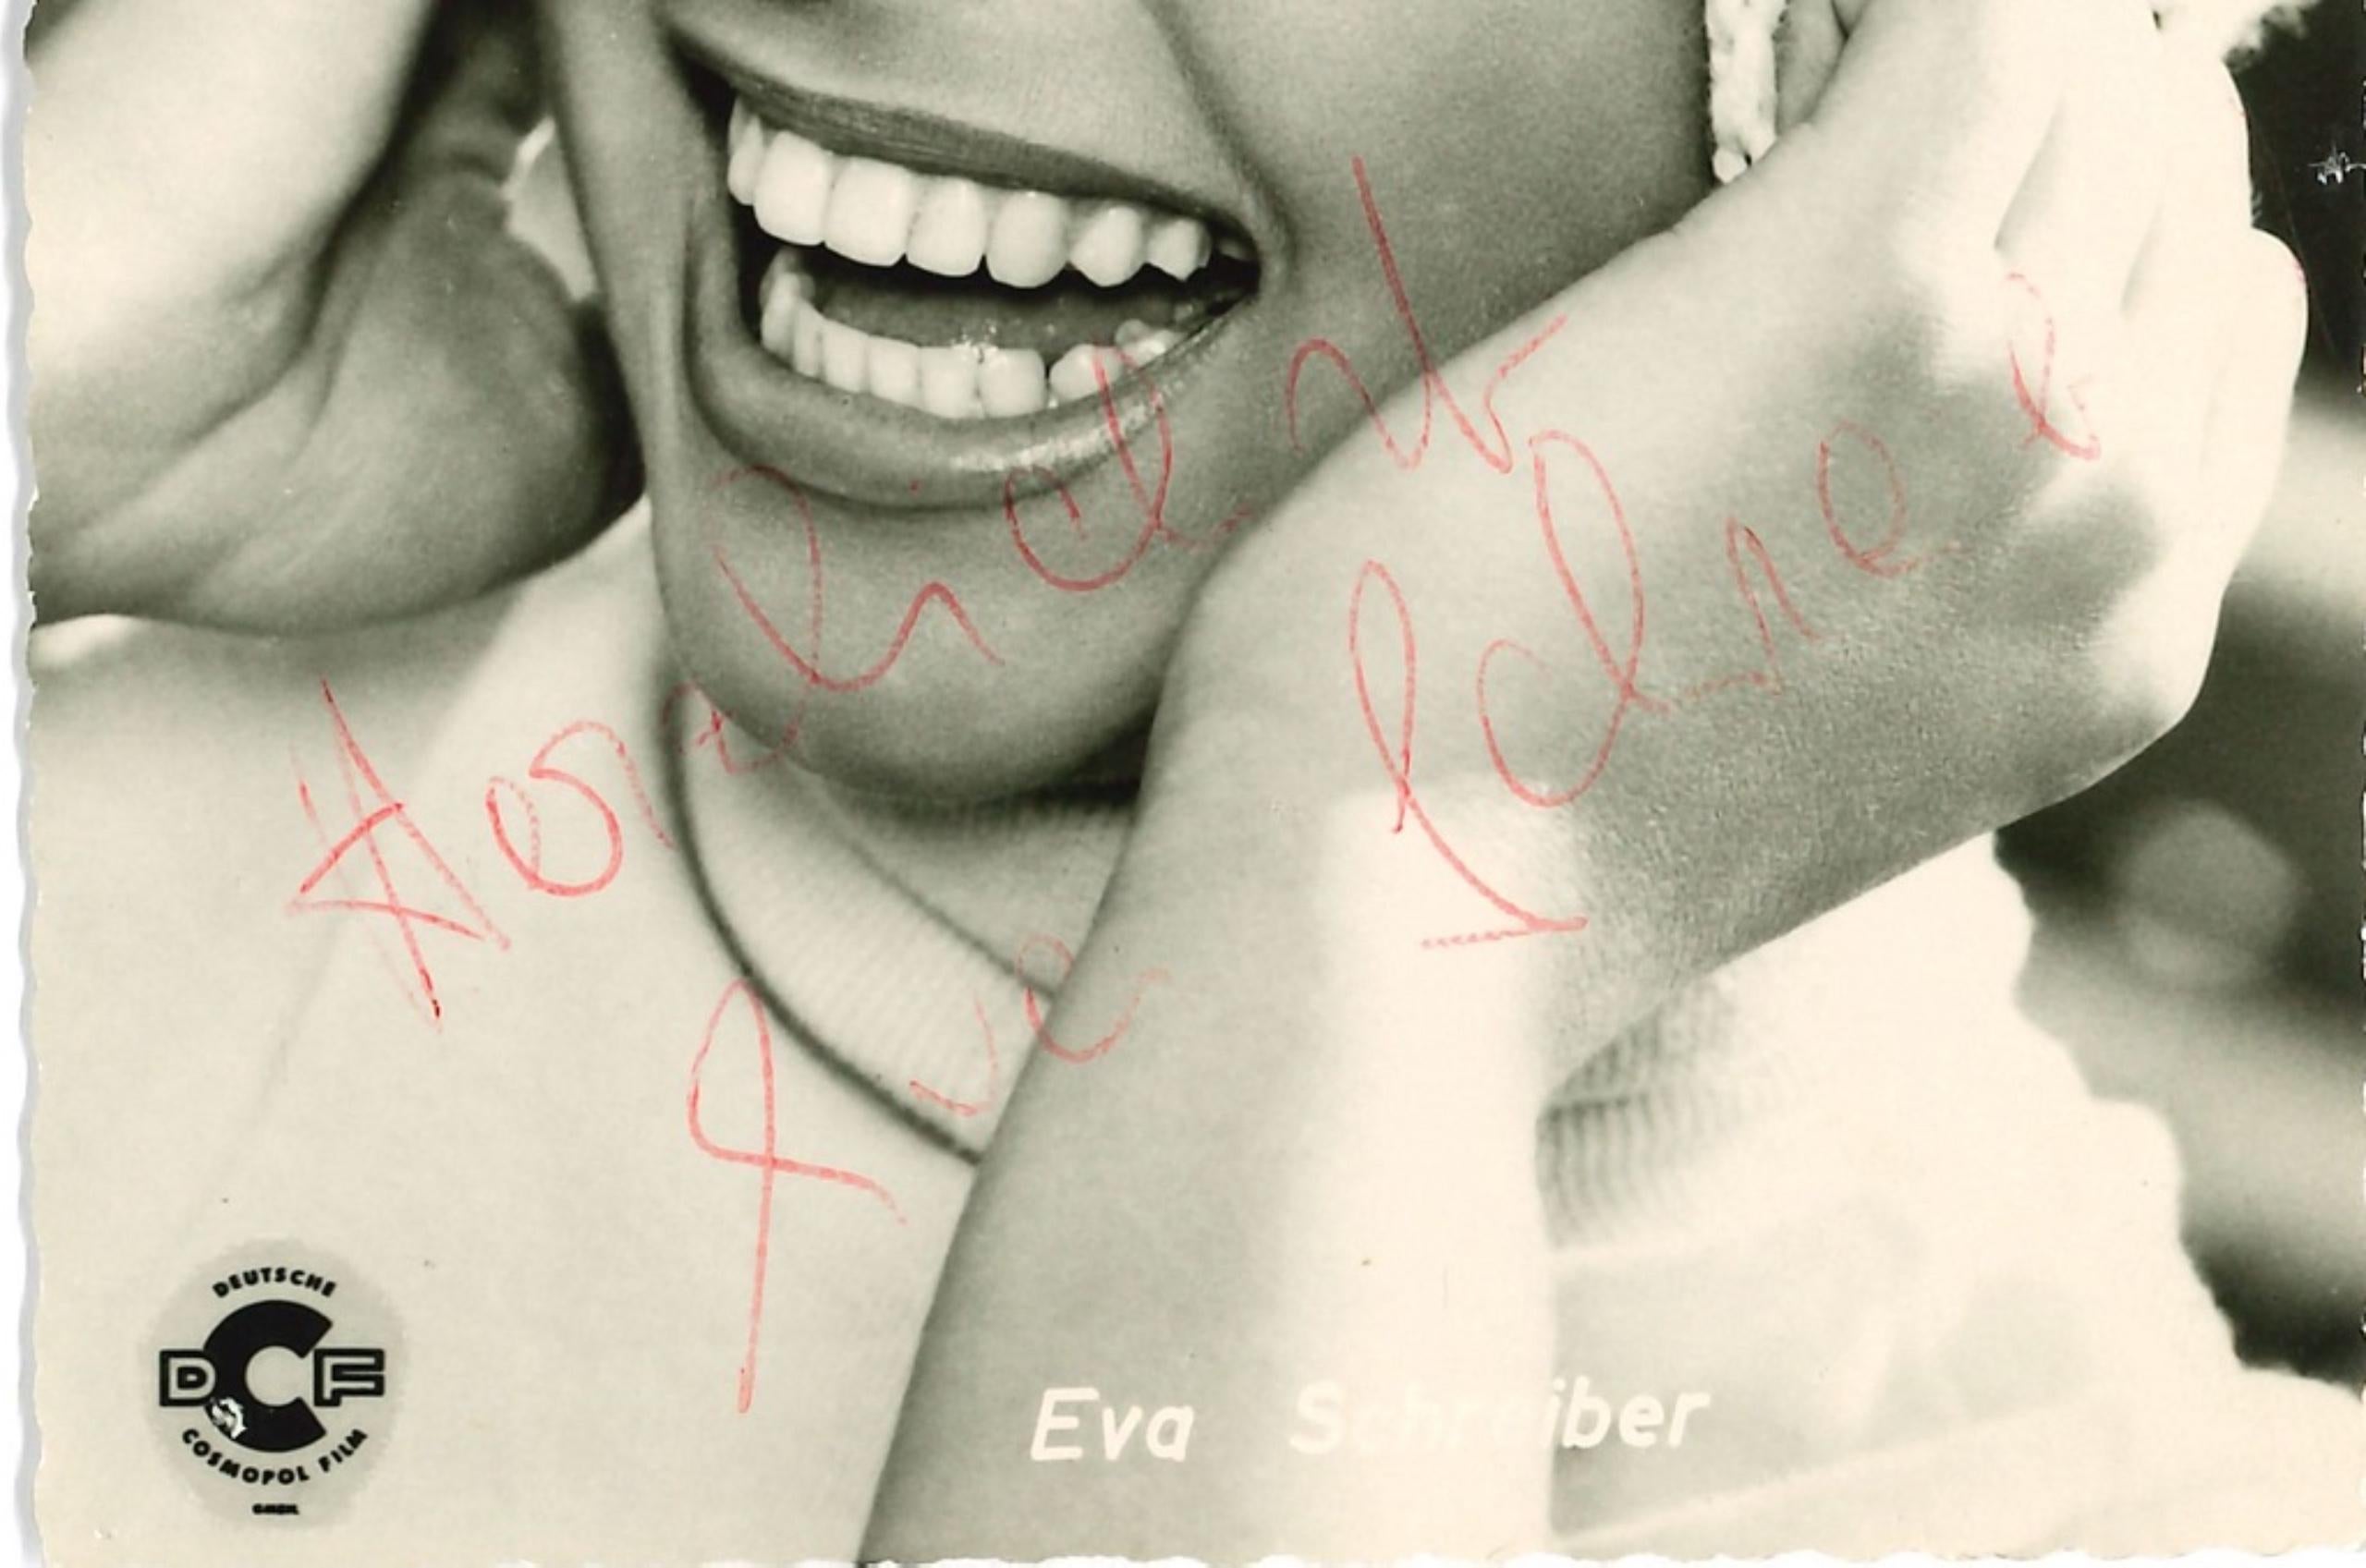 Autographed portrait of Eva Schreiber - Vintage b/w Postcard - 1958 - Photograph by Unknown